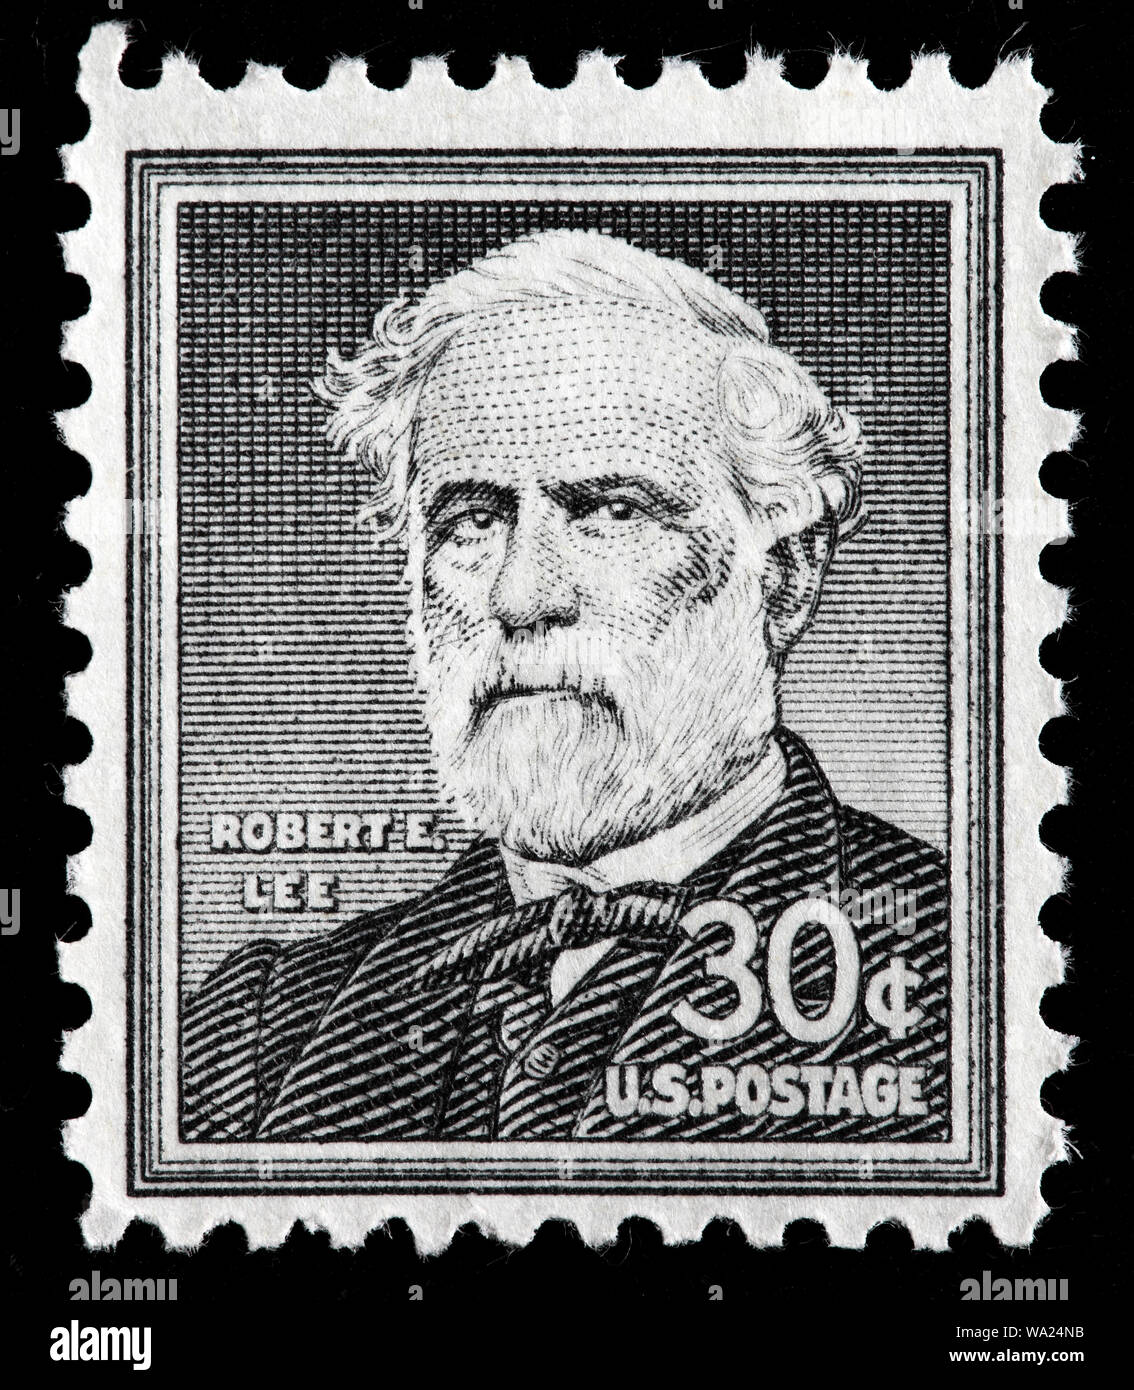 Robert E. Lee (1807-1870), Général, timbre-poste, USA, 1955 Banque D'Images